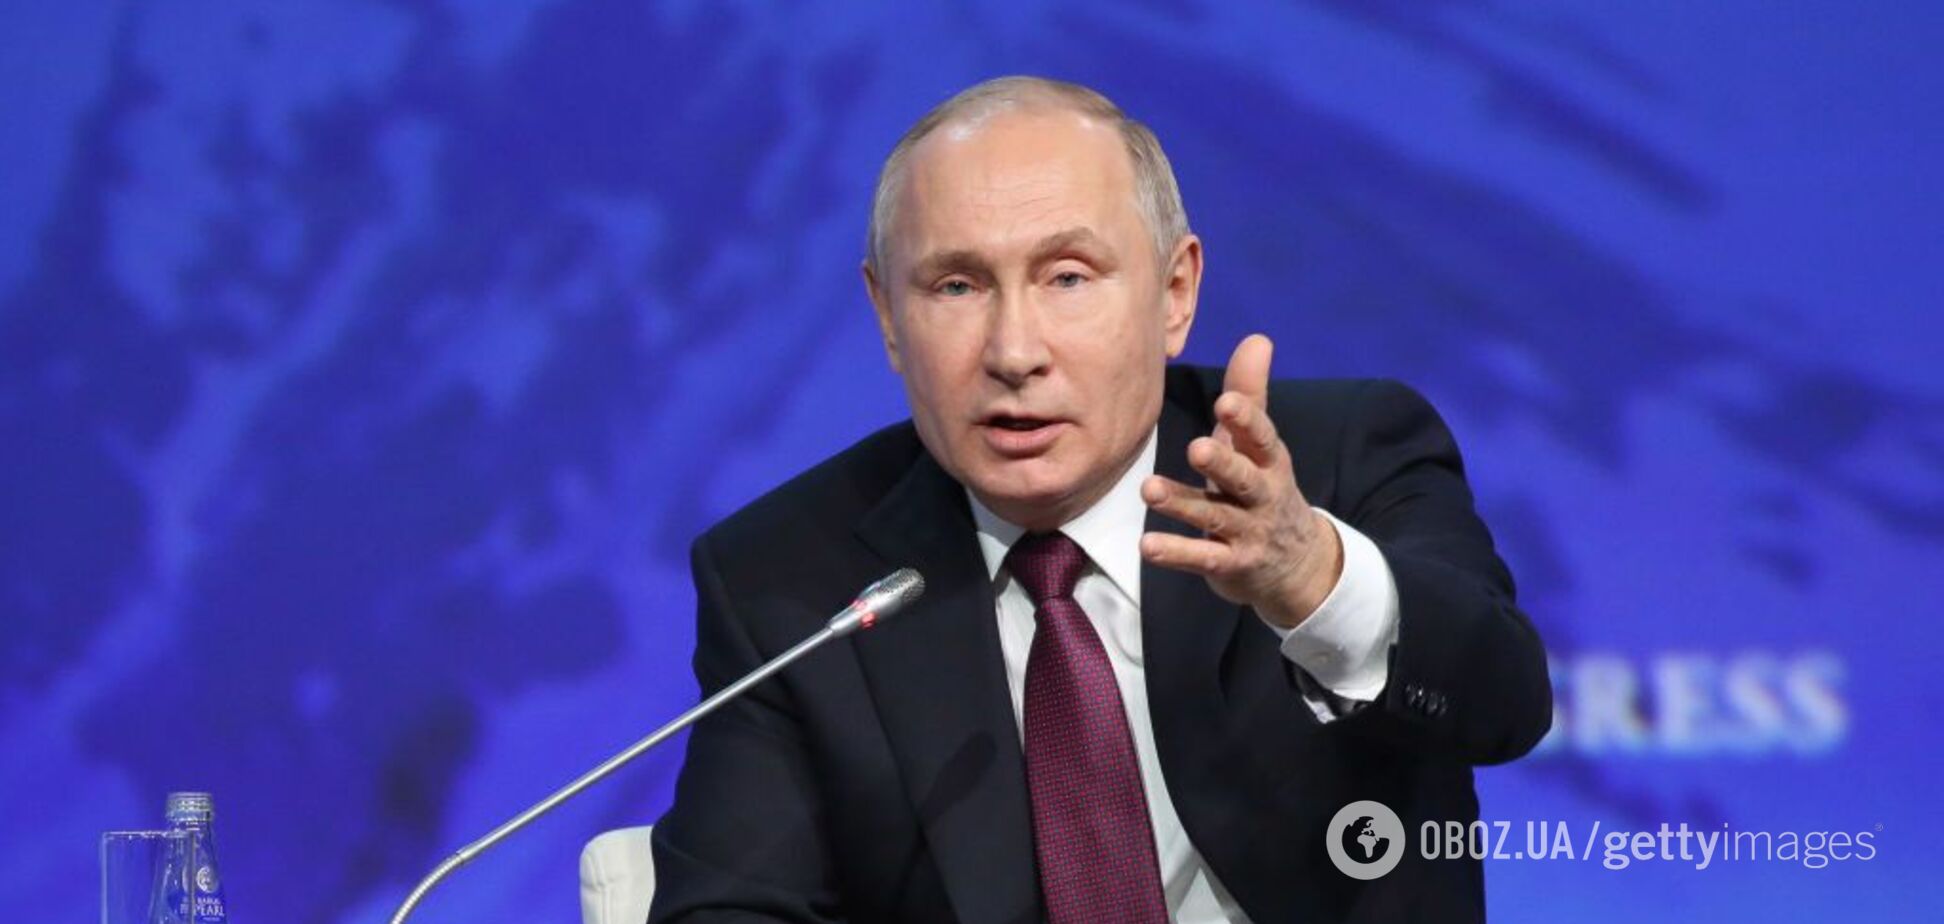 Дебаты Зеленского и Порошенко запишут для Путина на видео